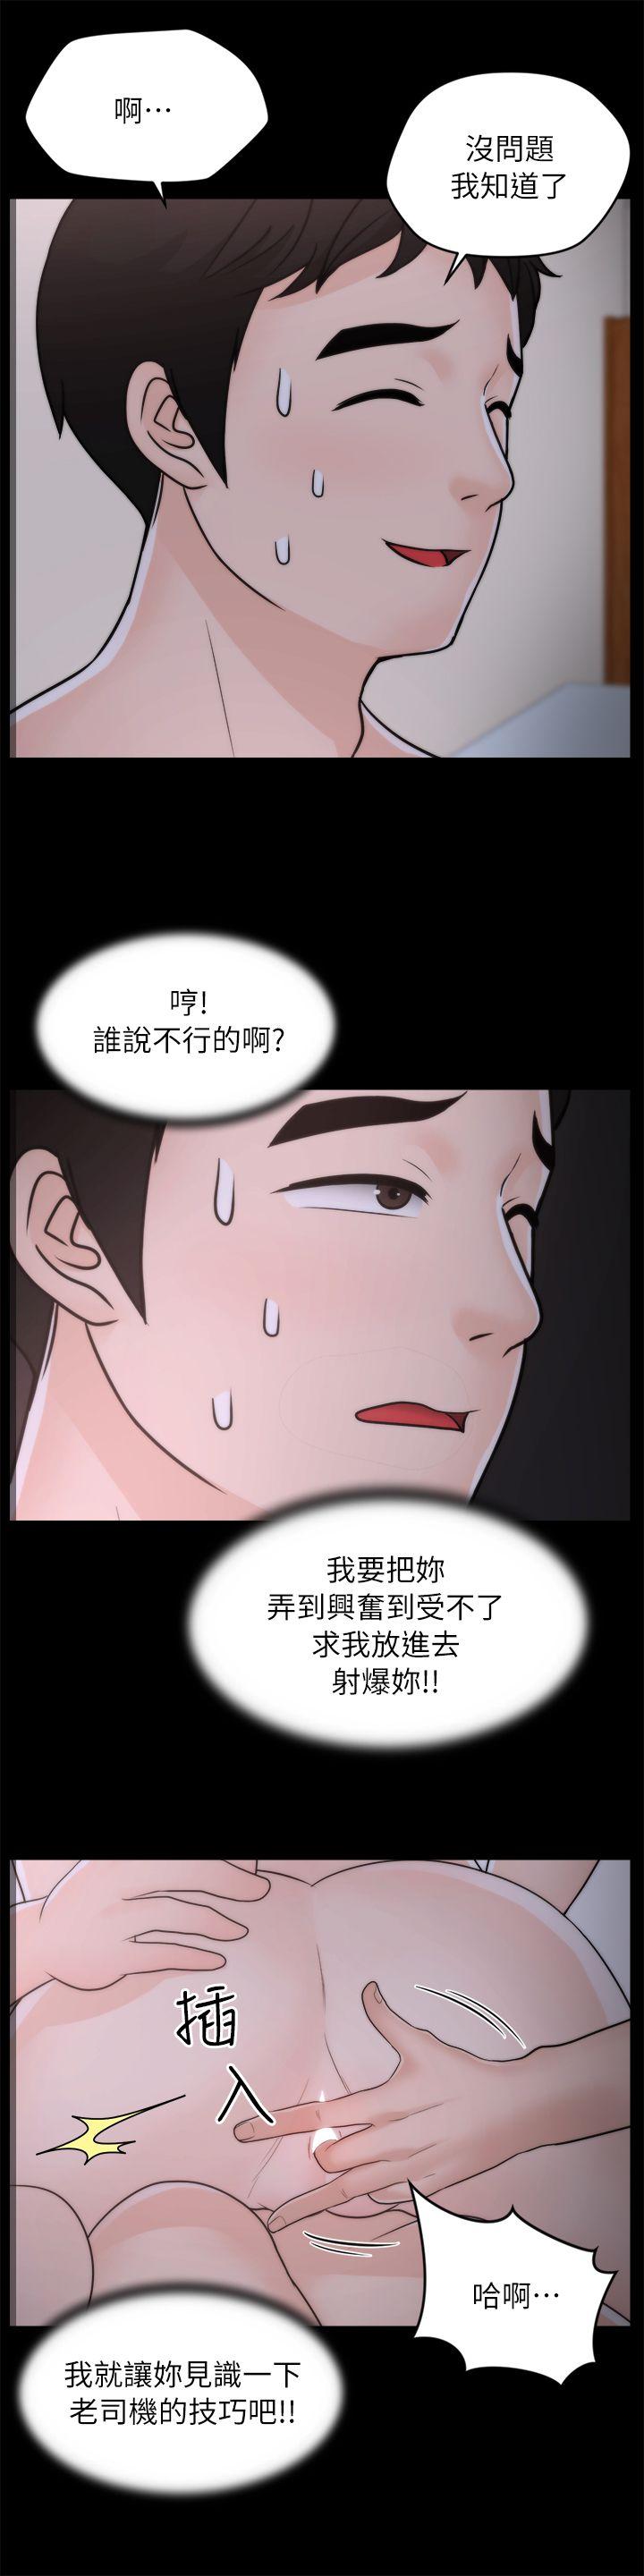 韩国污漫画 偷偷愛 第26话-老司机的技巧 21